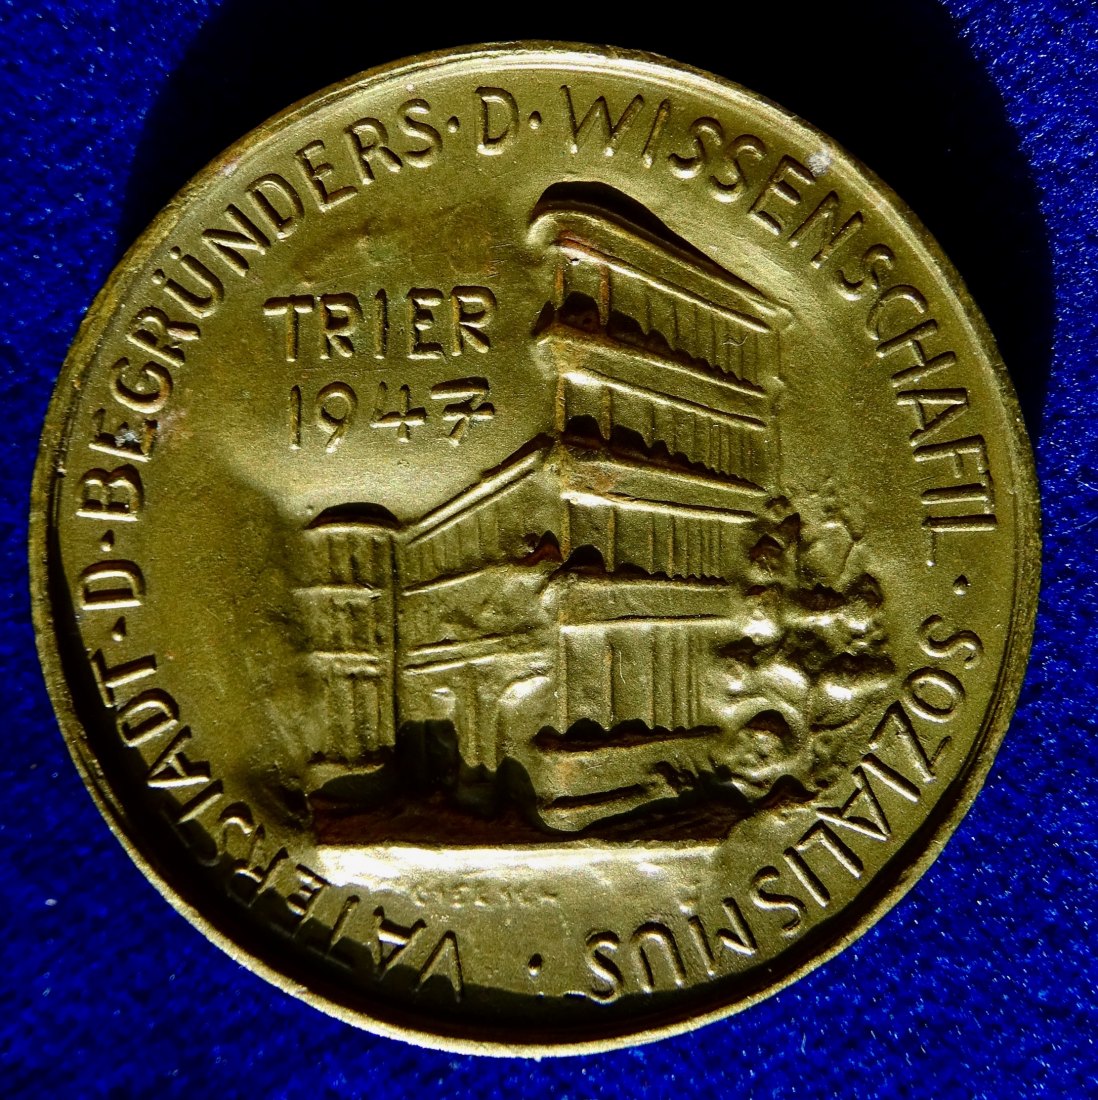  Trier 1947 Medaille Karl Marx Begründer des wissenschaftlichen Sozialismus   